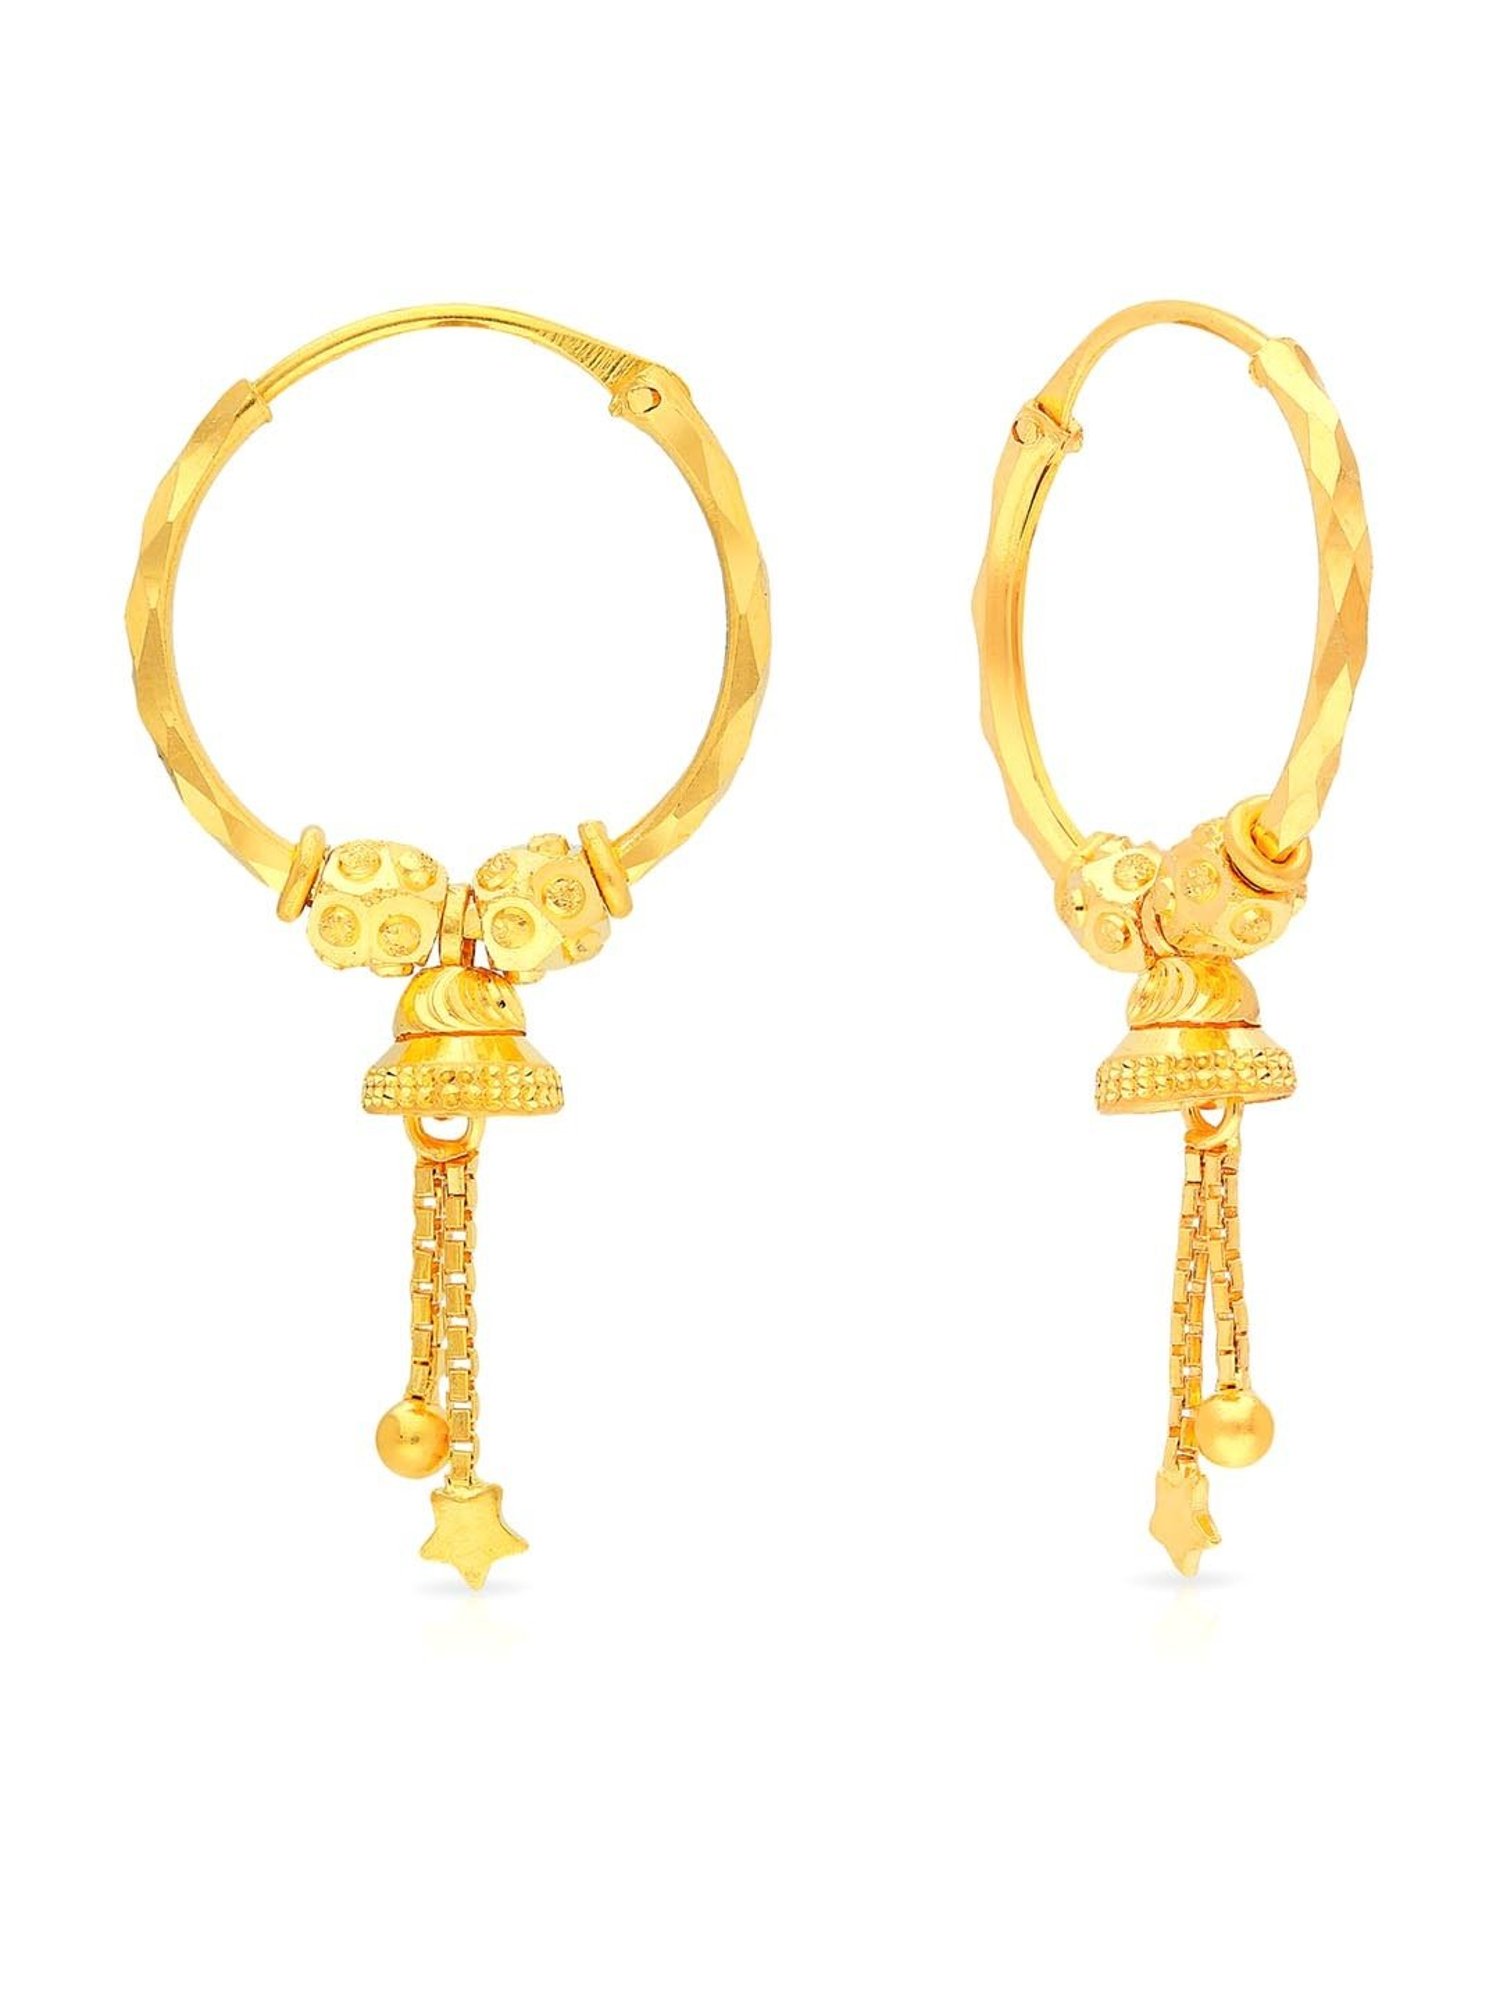 Malabar Gold  Diamonds 22KT Yellow Gold Hoop Earrings for Women   Amazonin Fashion